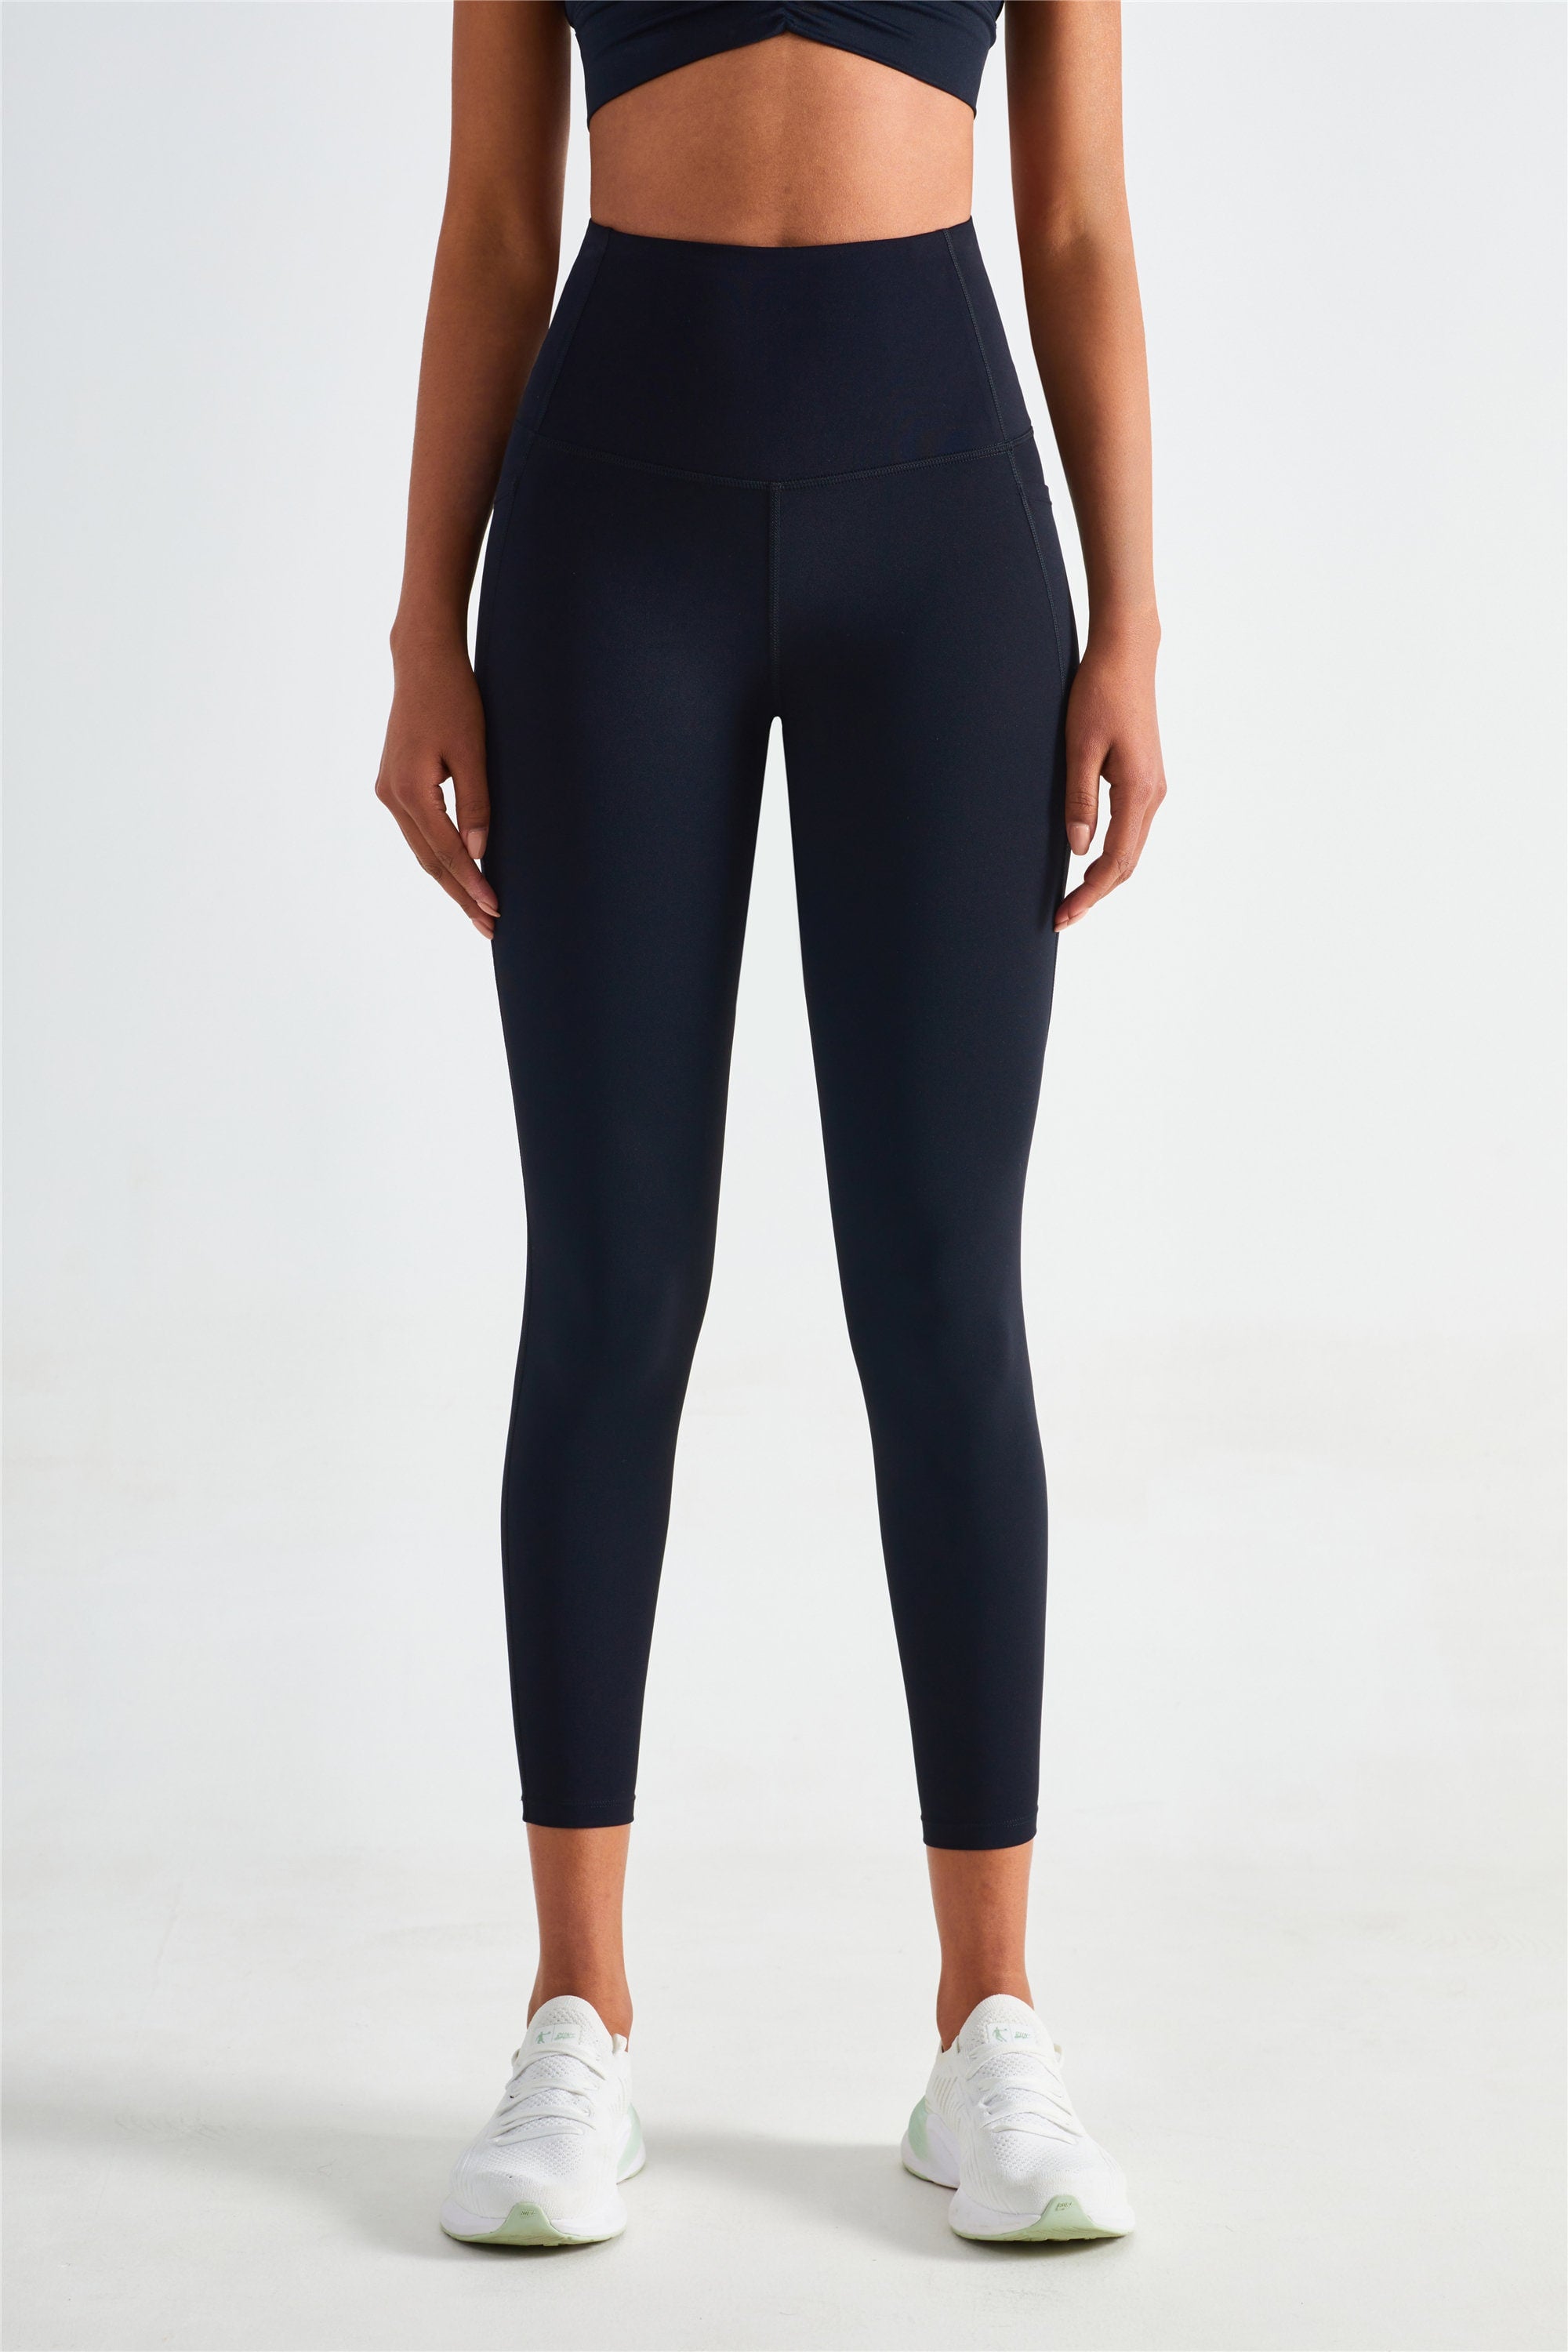 Yoga Pants Nylon Spandex | Nylon Spandex Leggings | Spandex Yoga Leggings -  2023 High - Aliexpress